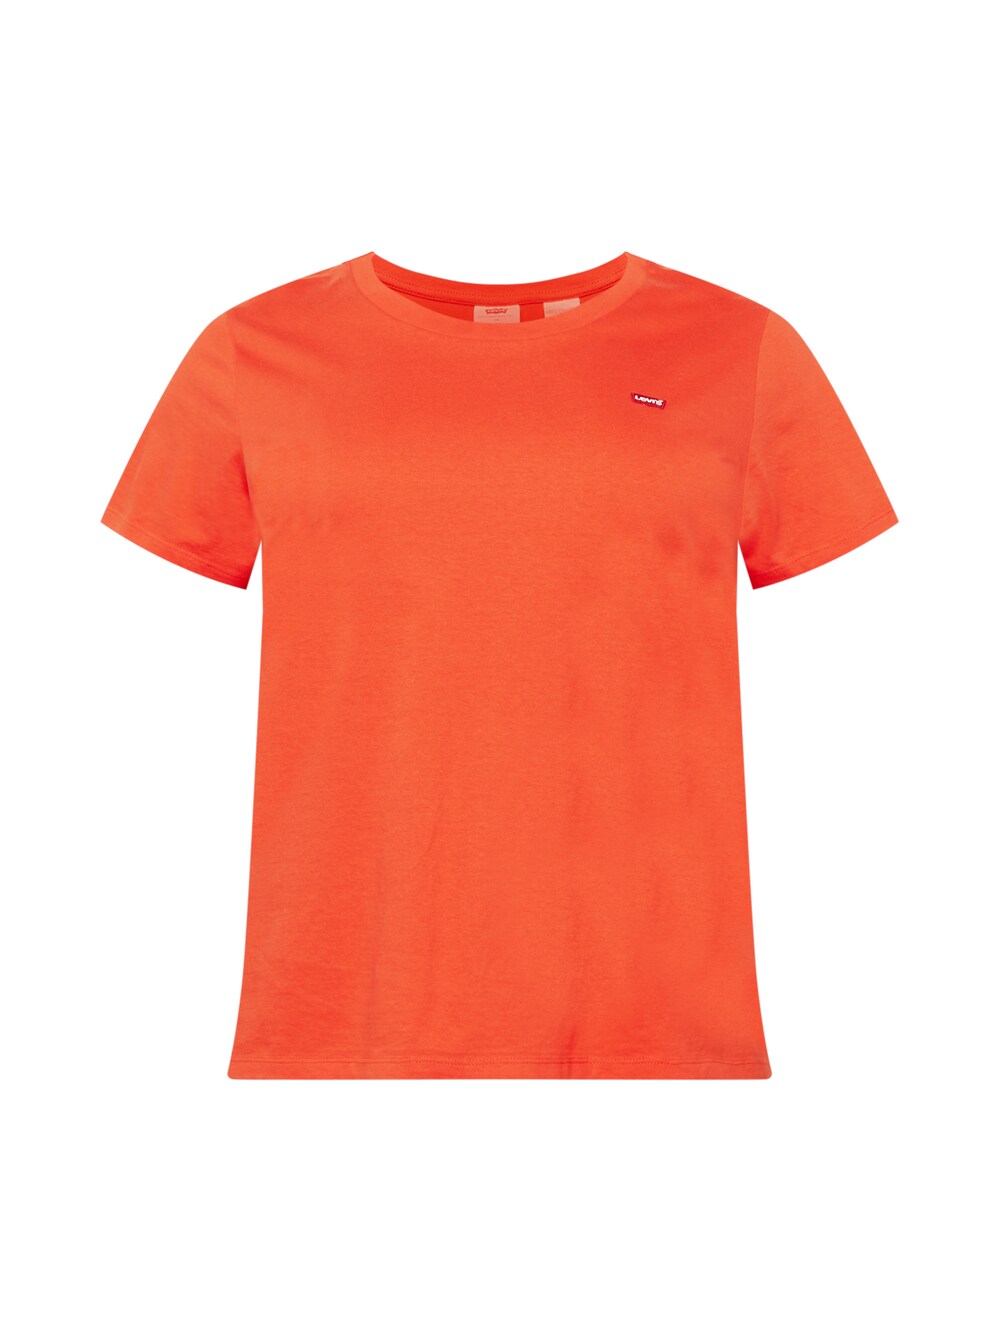 Рубашка Levi's, оранжево-красный рубашка only оранжево красный